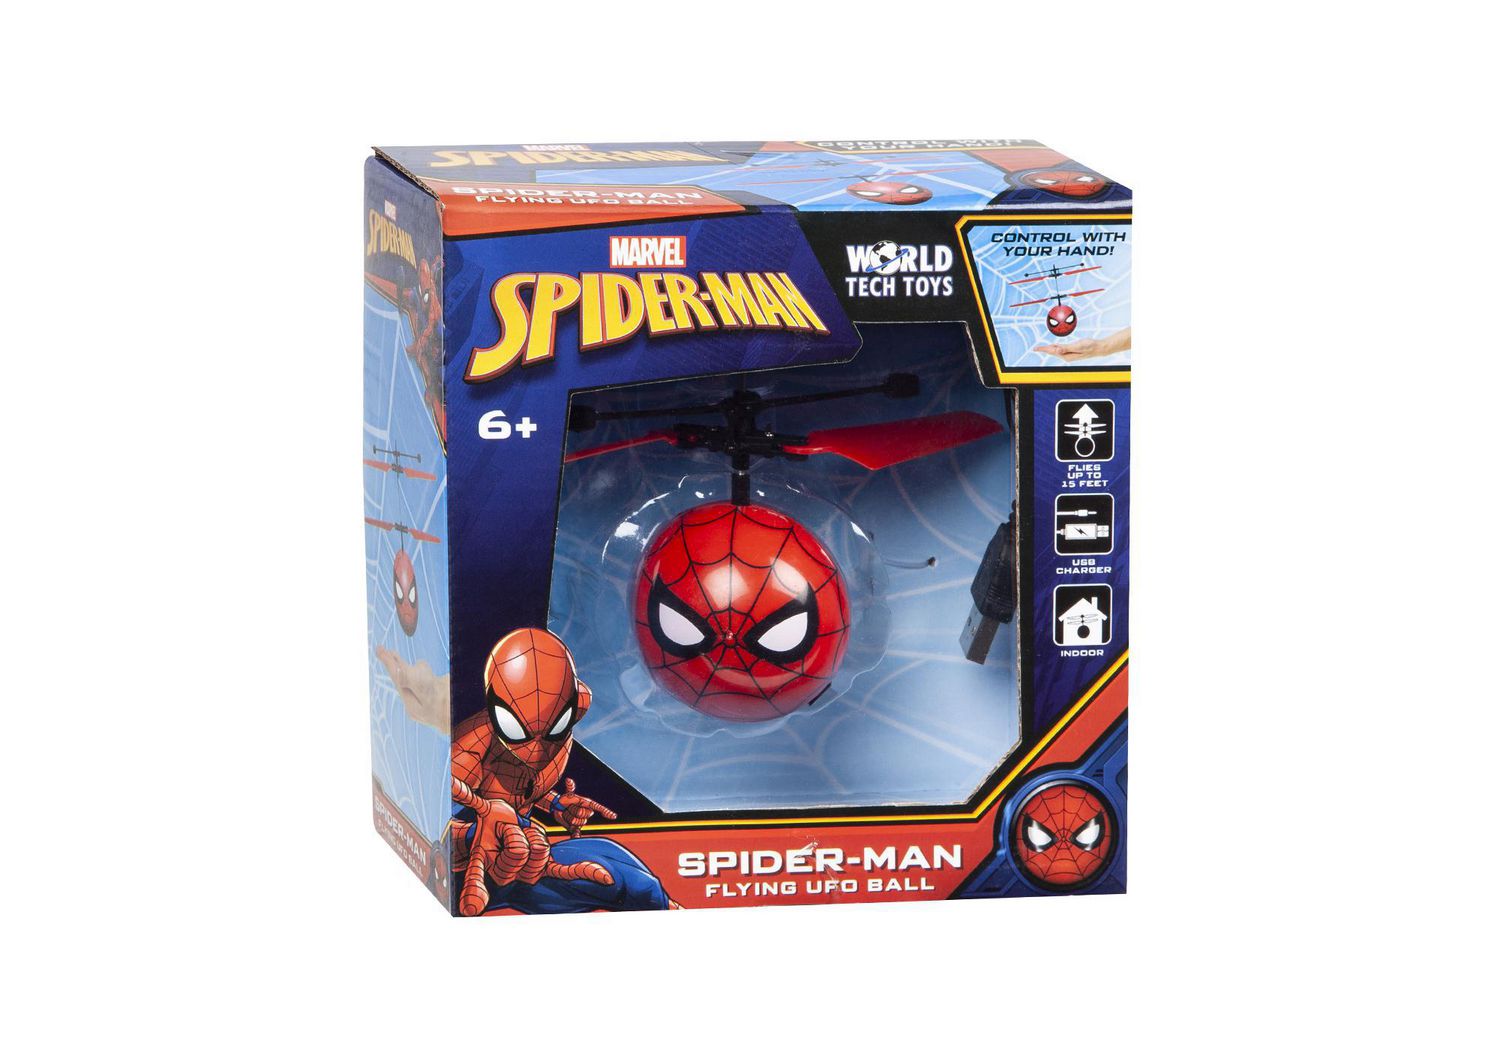 Spiderman Box Usb Driver 2007